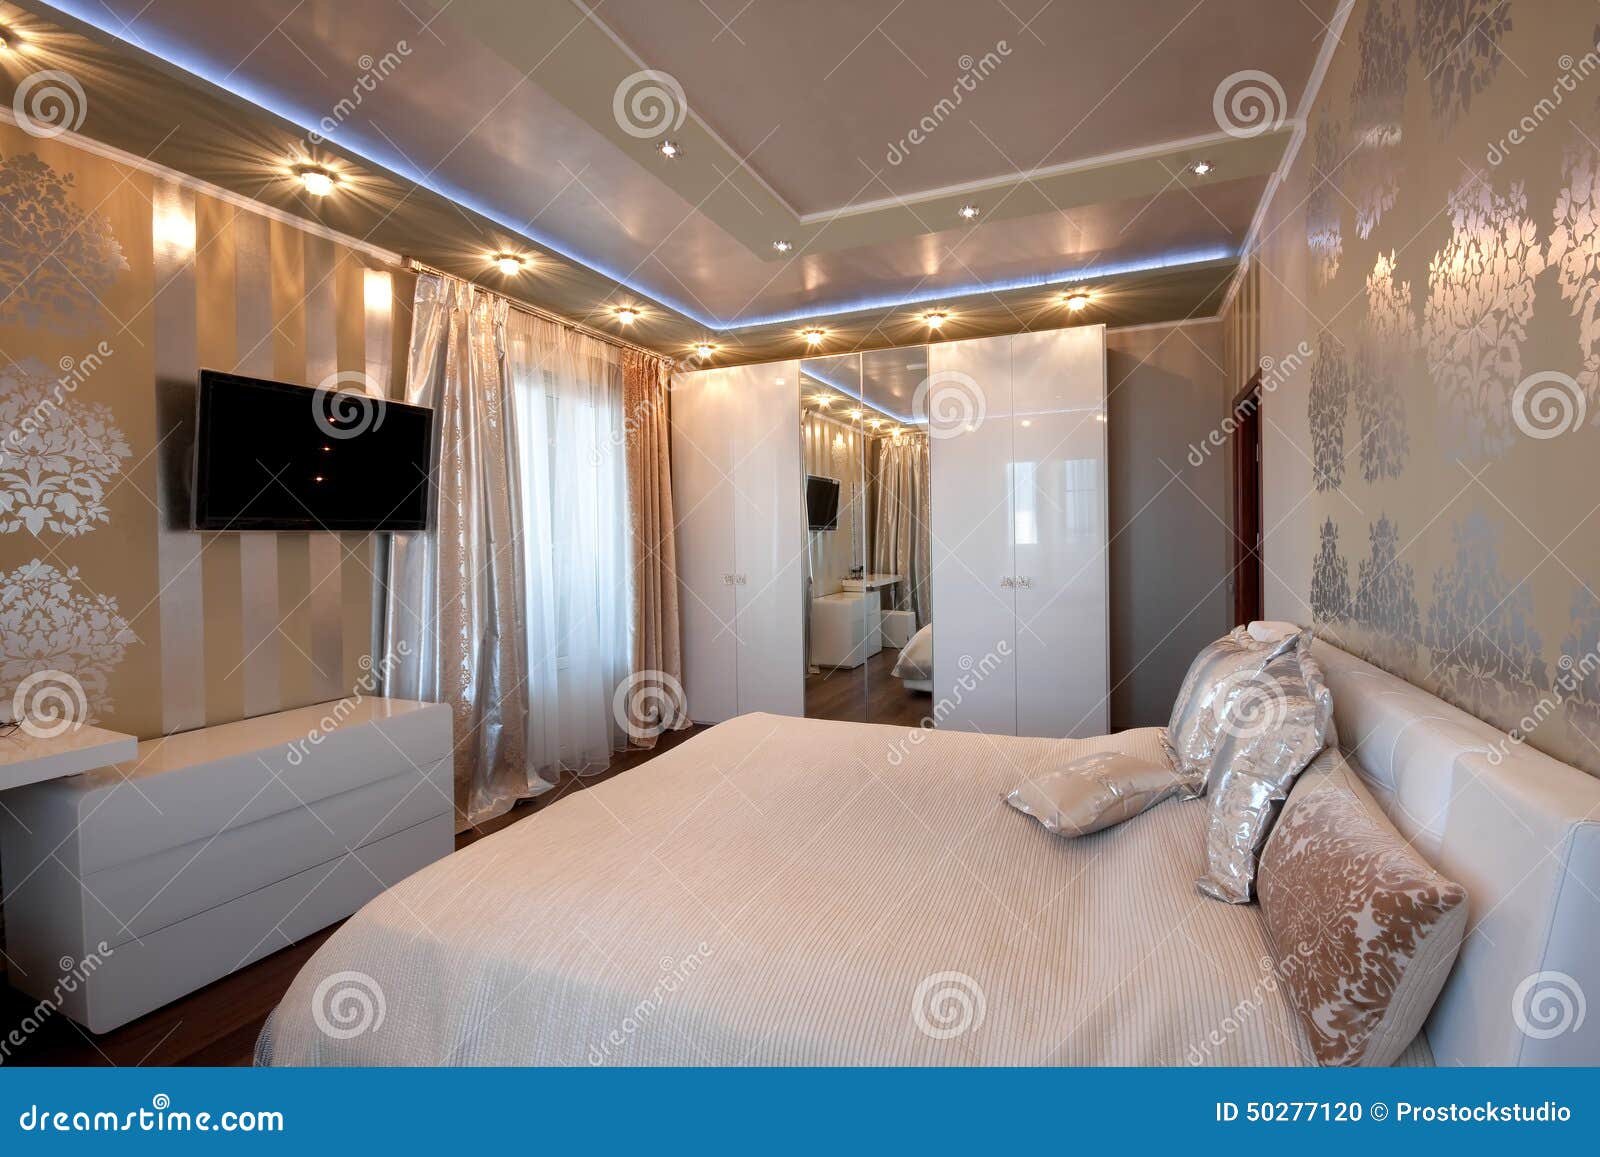 Schlafzimmer Des Modernen Designs In Den Goldenen Farben Stockfoto